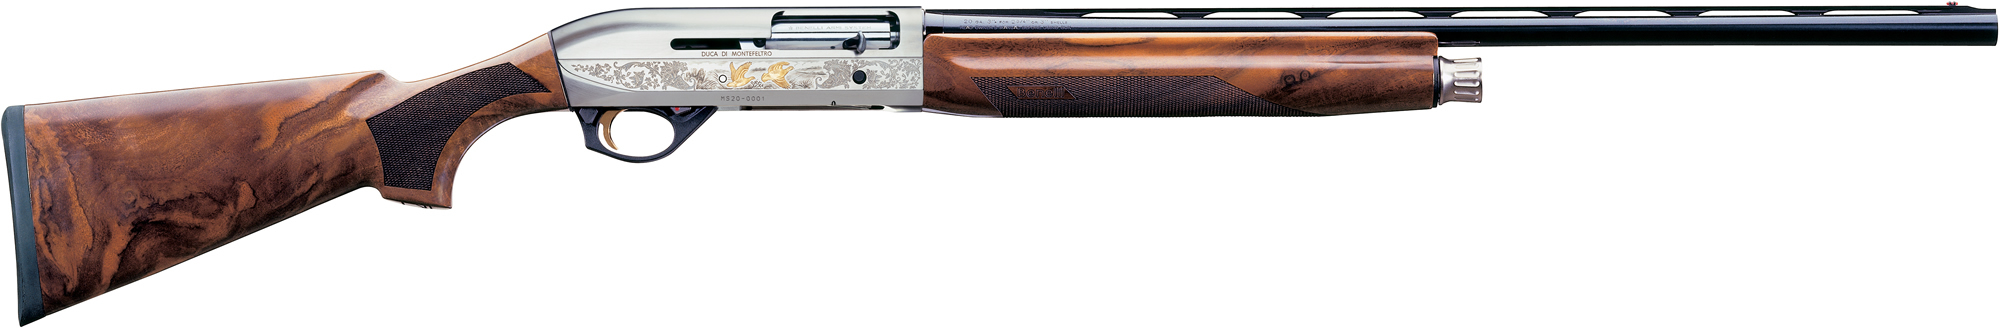 Benelli Montefeltro Silver Shotgun 10855, 20 Gauge, 26